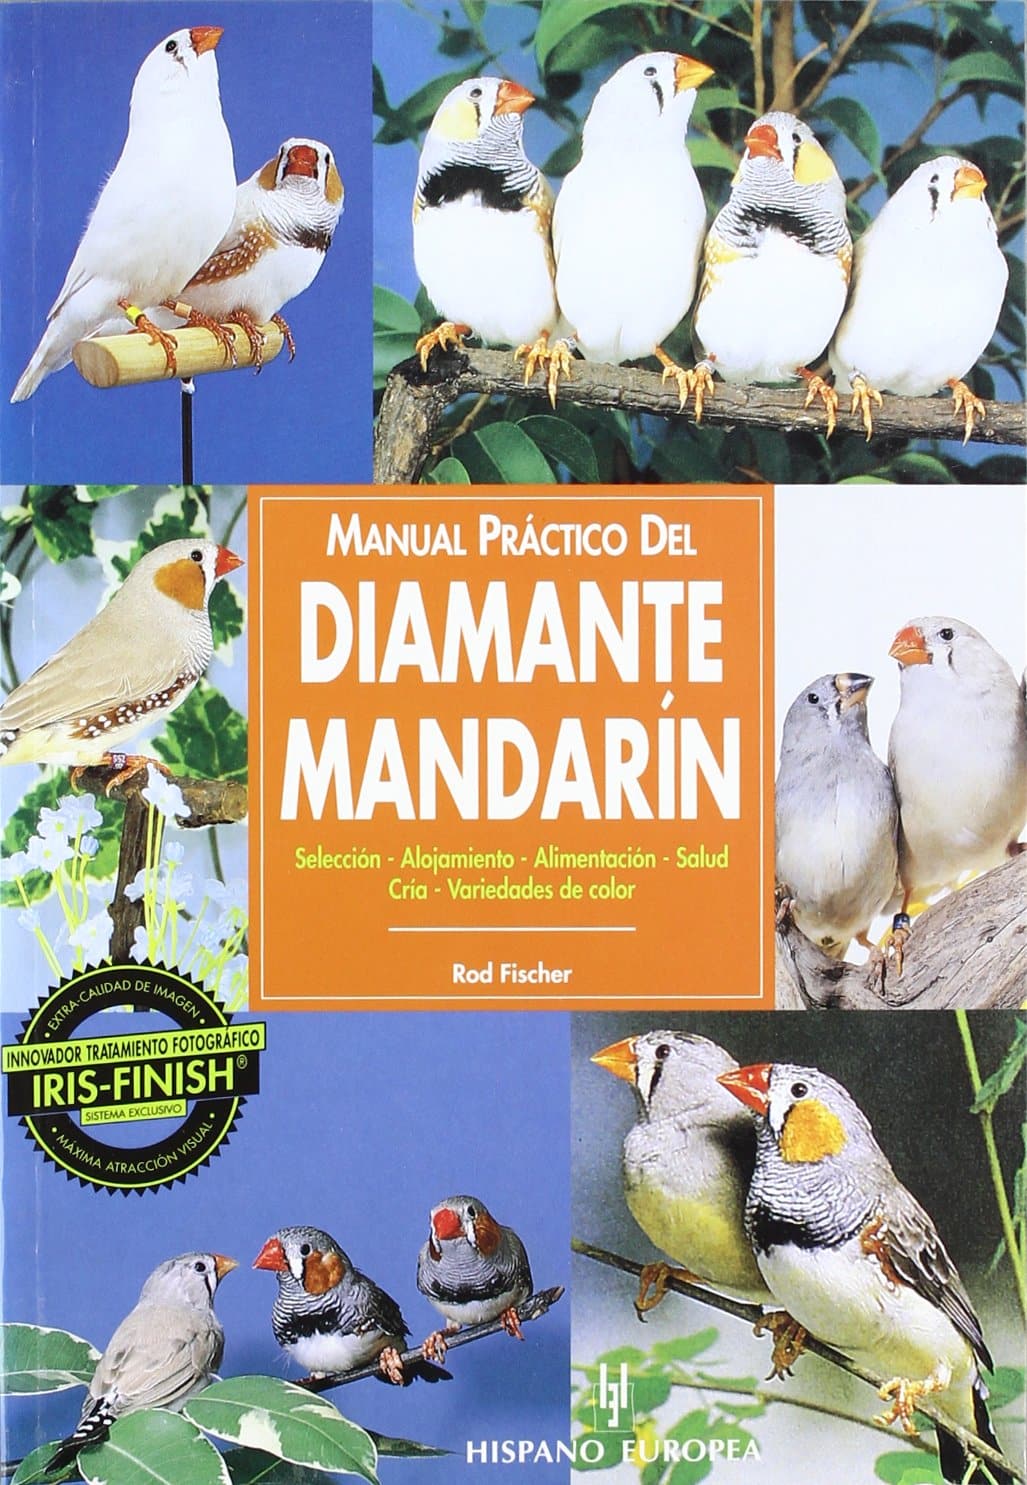 Manual práctico del diamante mandarín (Manuales prácticos)